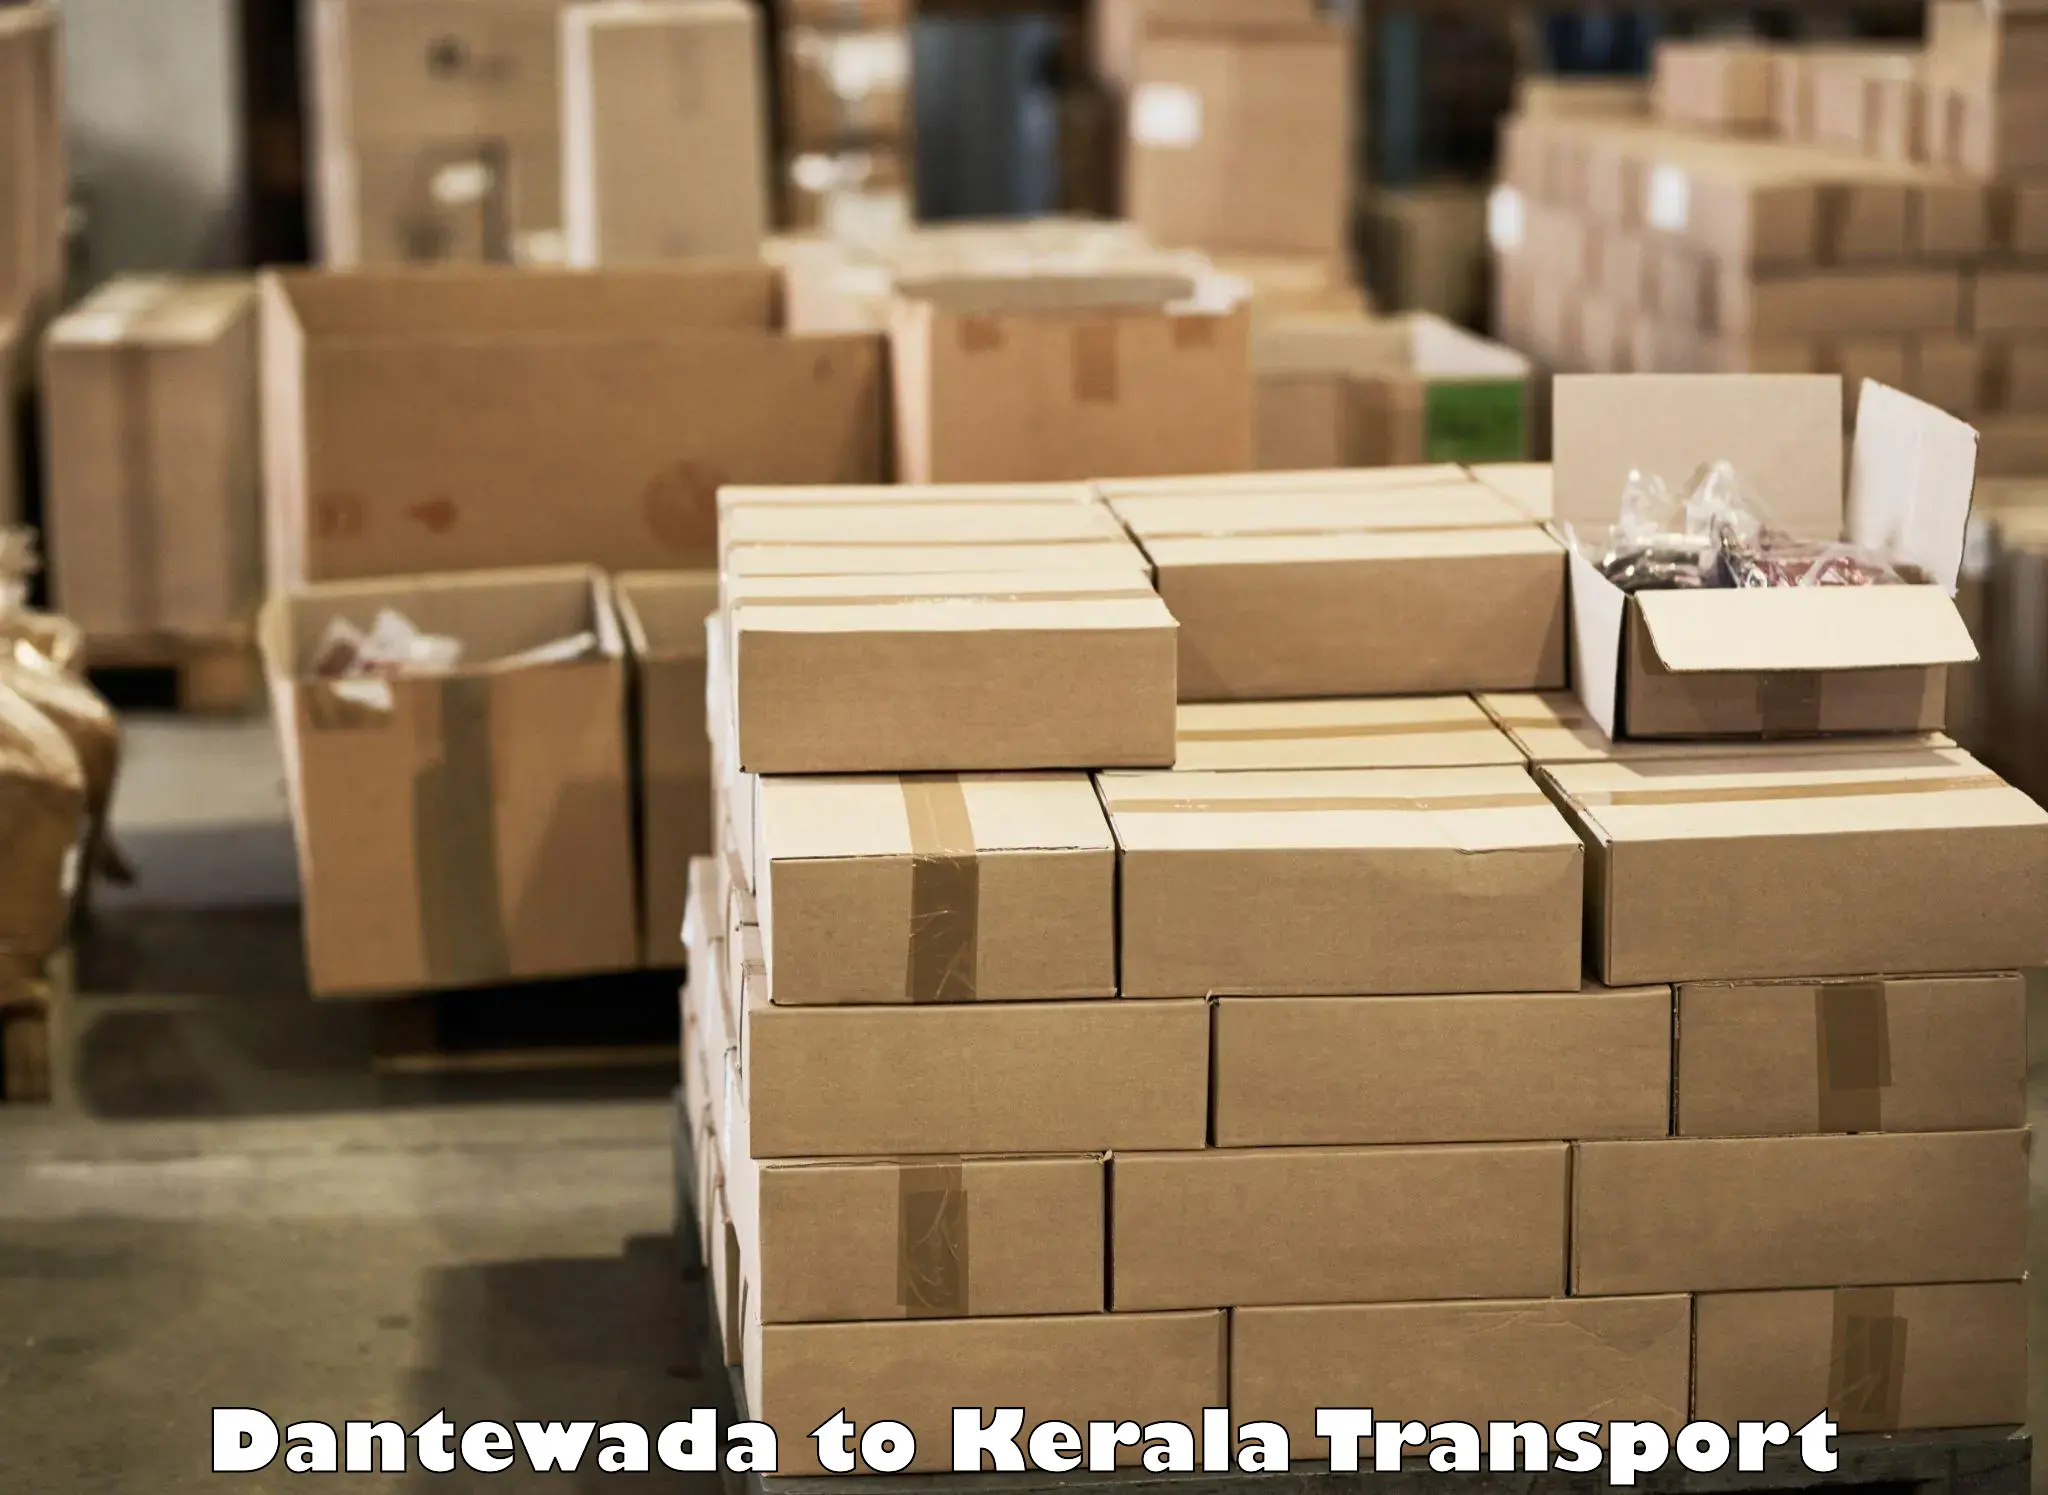 Bike shipping service Dantewada to Kuthiathode